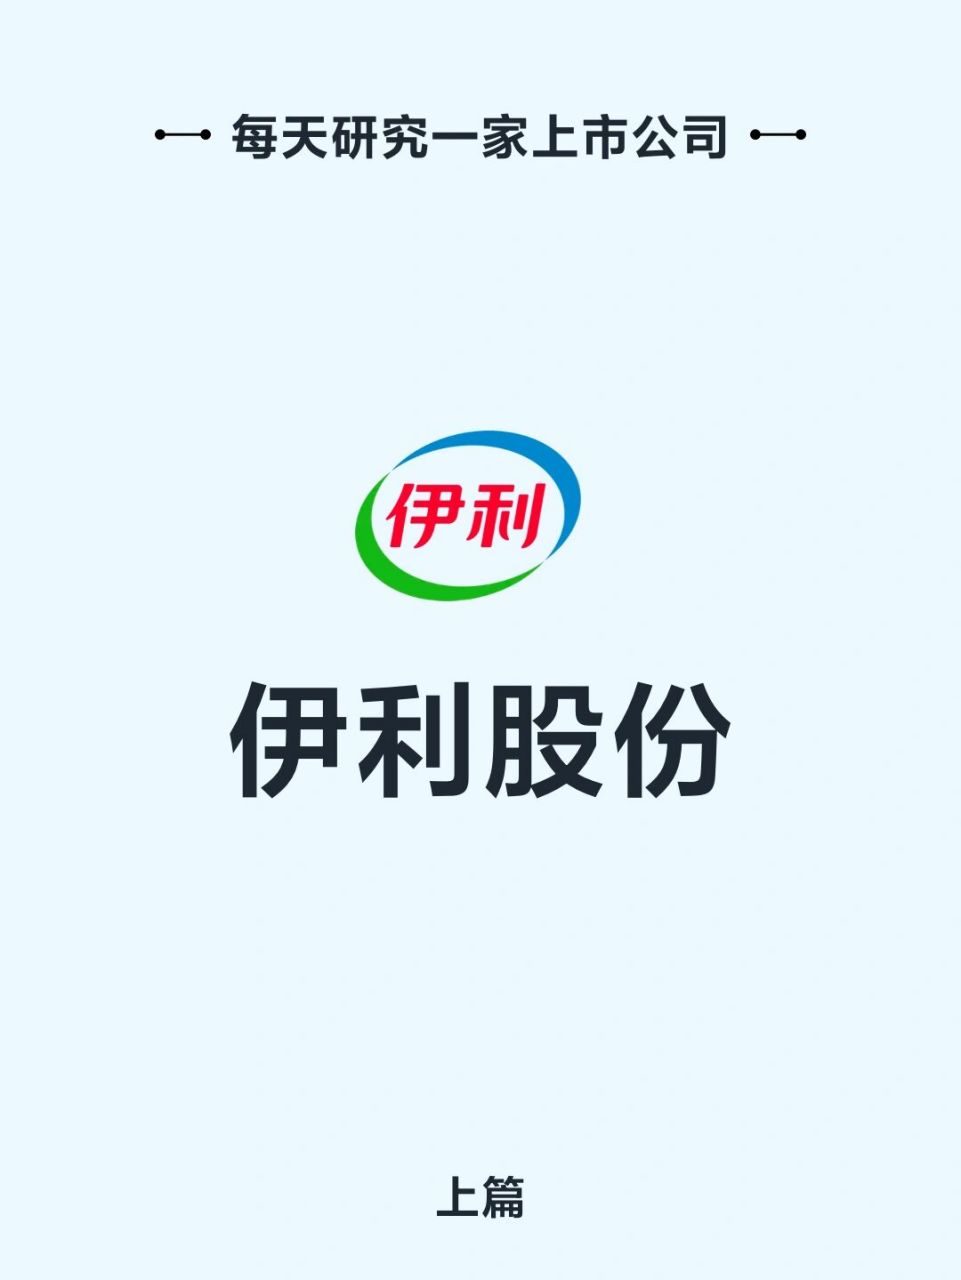 伊利股份logo图片